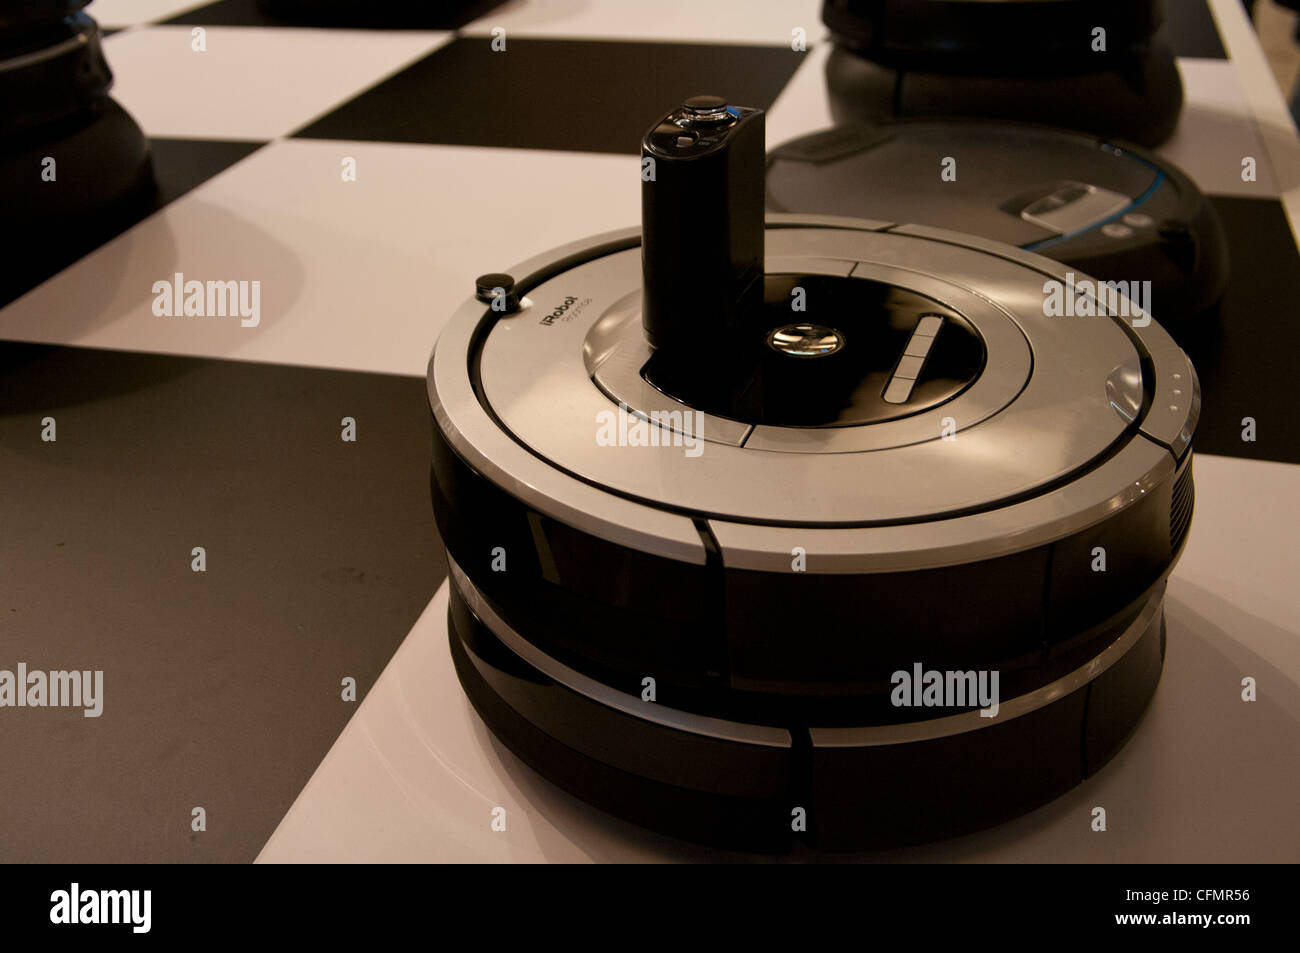 Robot Roomba escoba (y limpia) de la empresa irobot robot. INNOROBO, cumbre  europea e internacional en el campo de la robótica Fotografía de stock -  Alamy